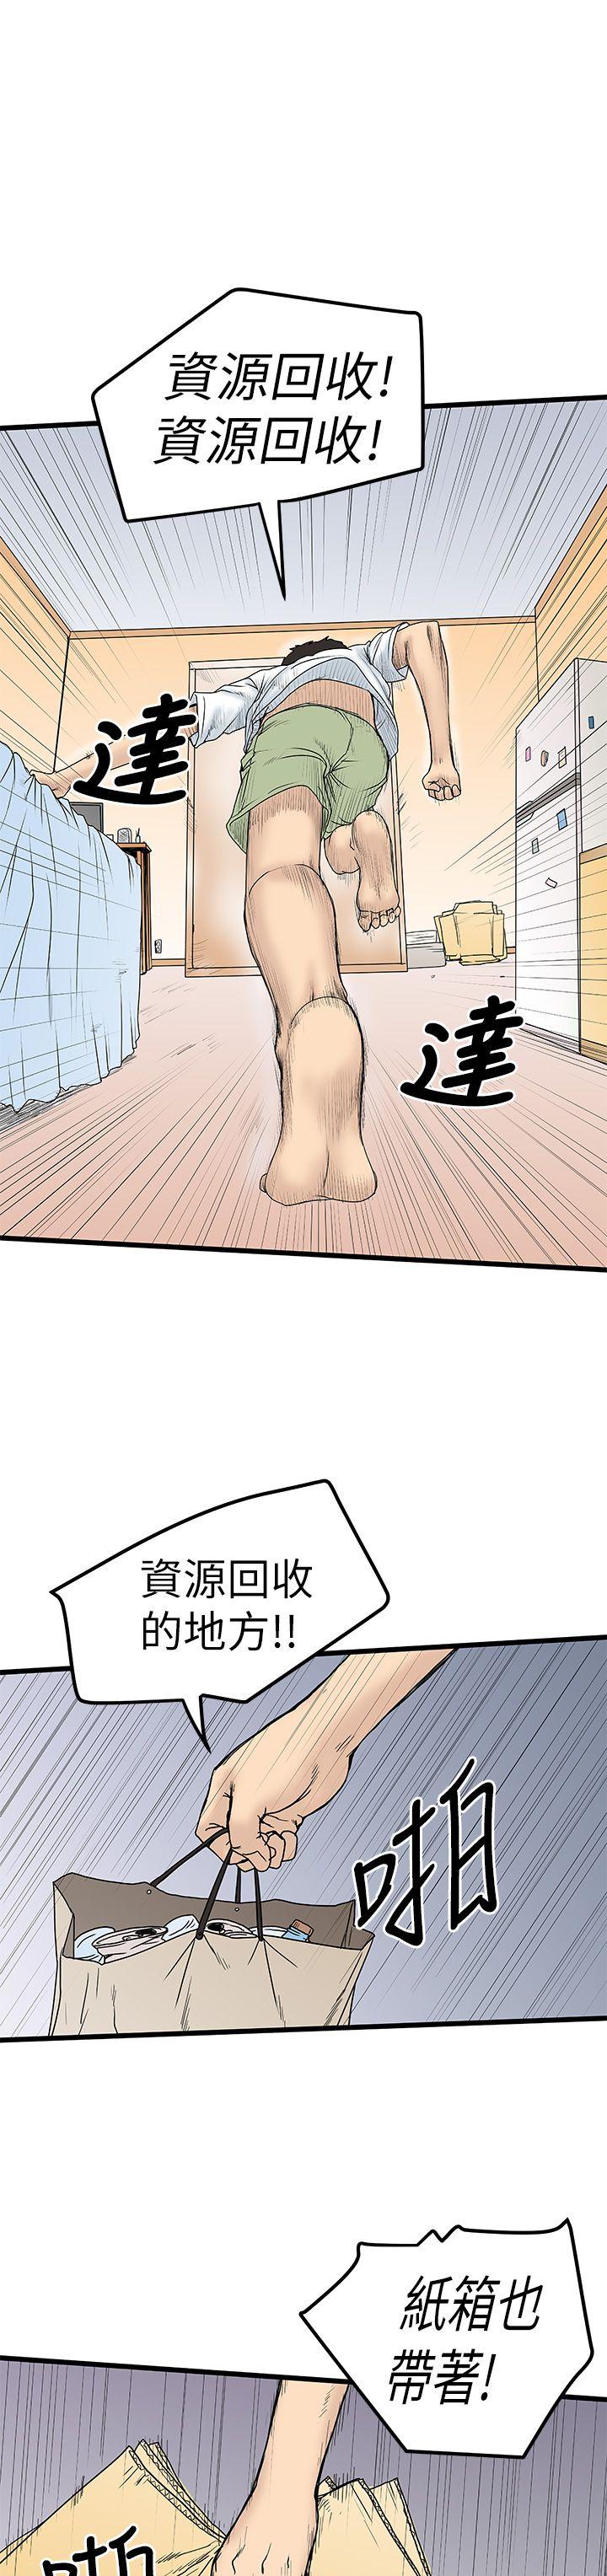 韩国污漫画 想像狂熱 第4话 21